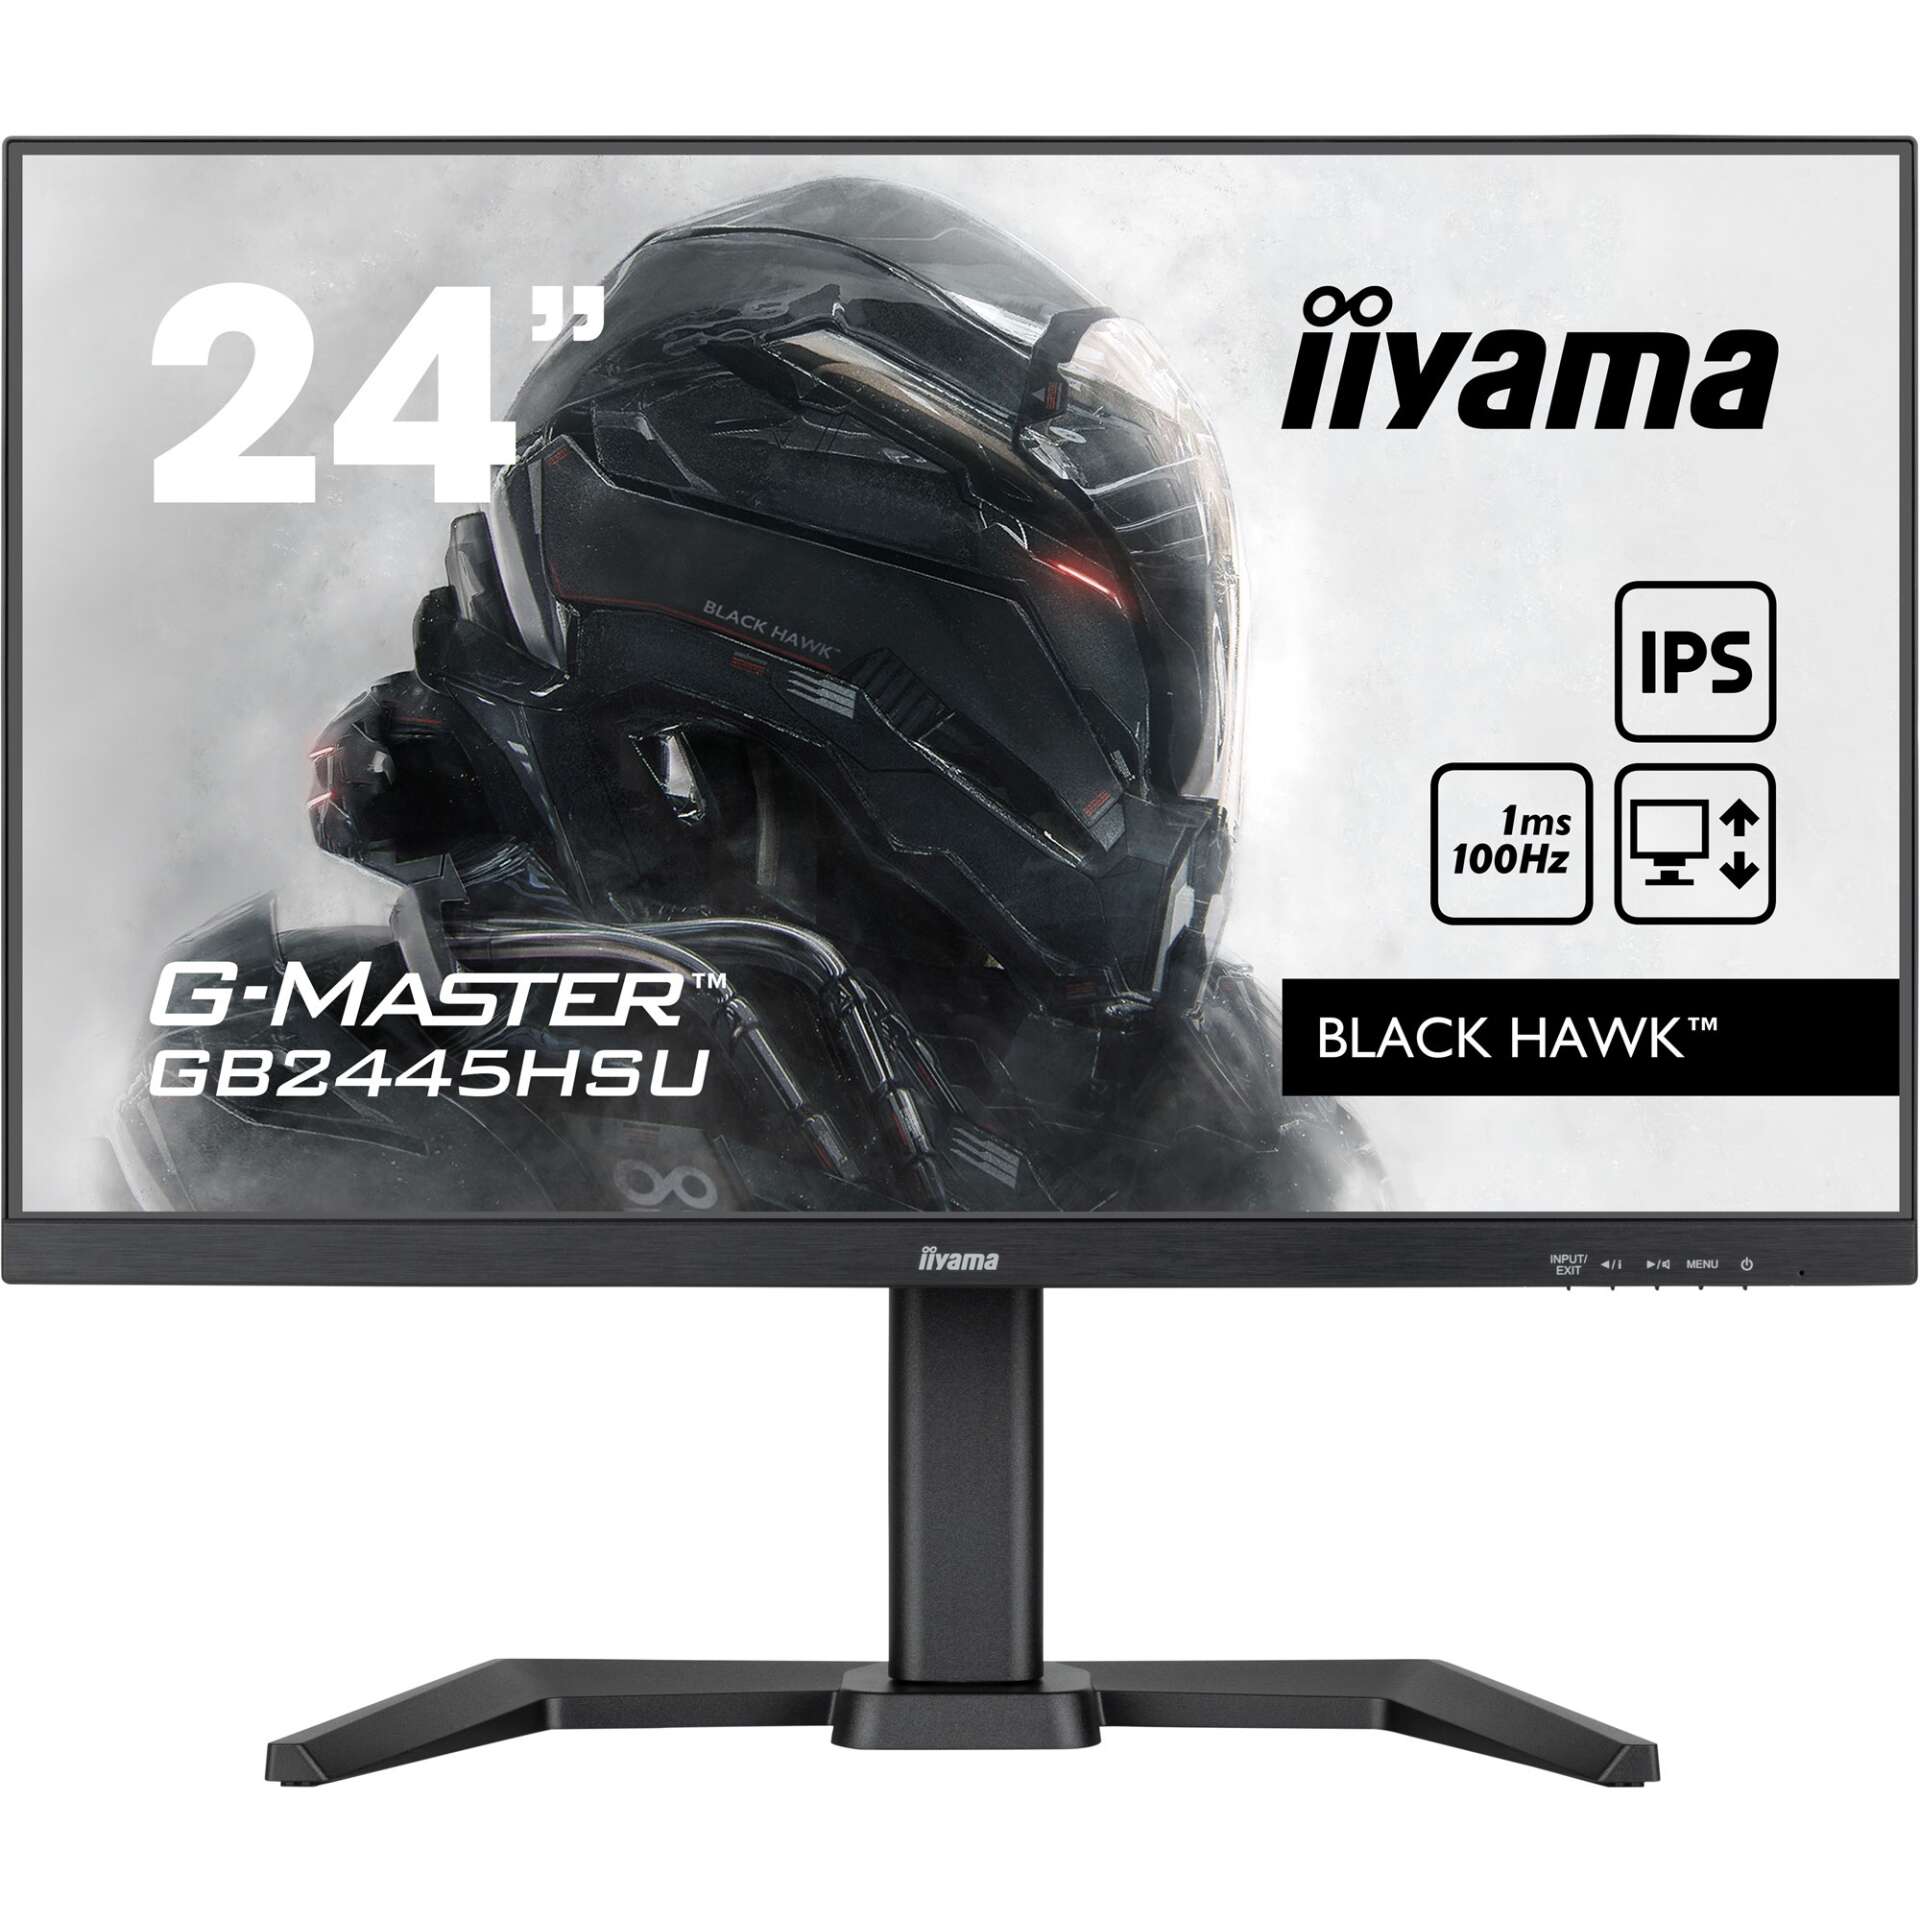 Iiyama 24" gb2445hsu-b1 g-master black hawk gaming monitor